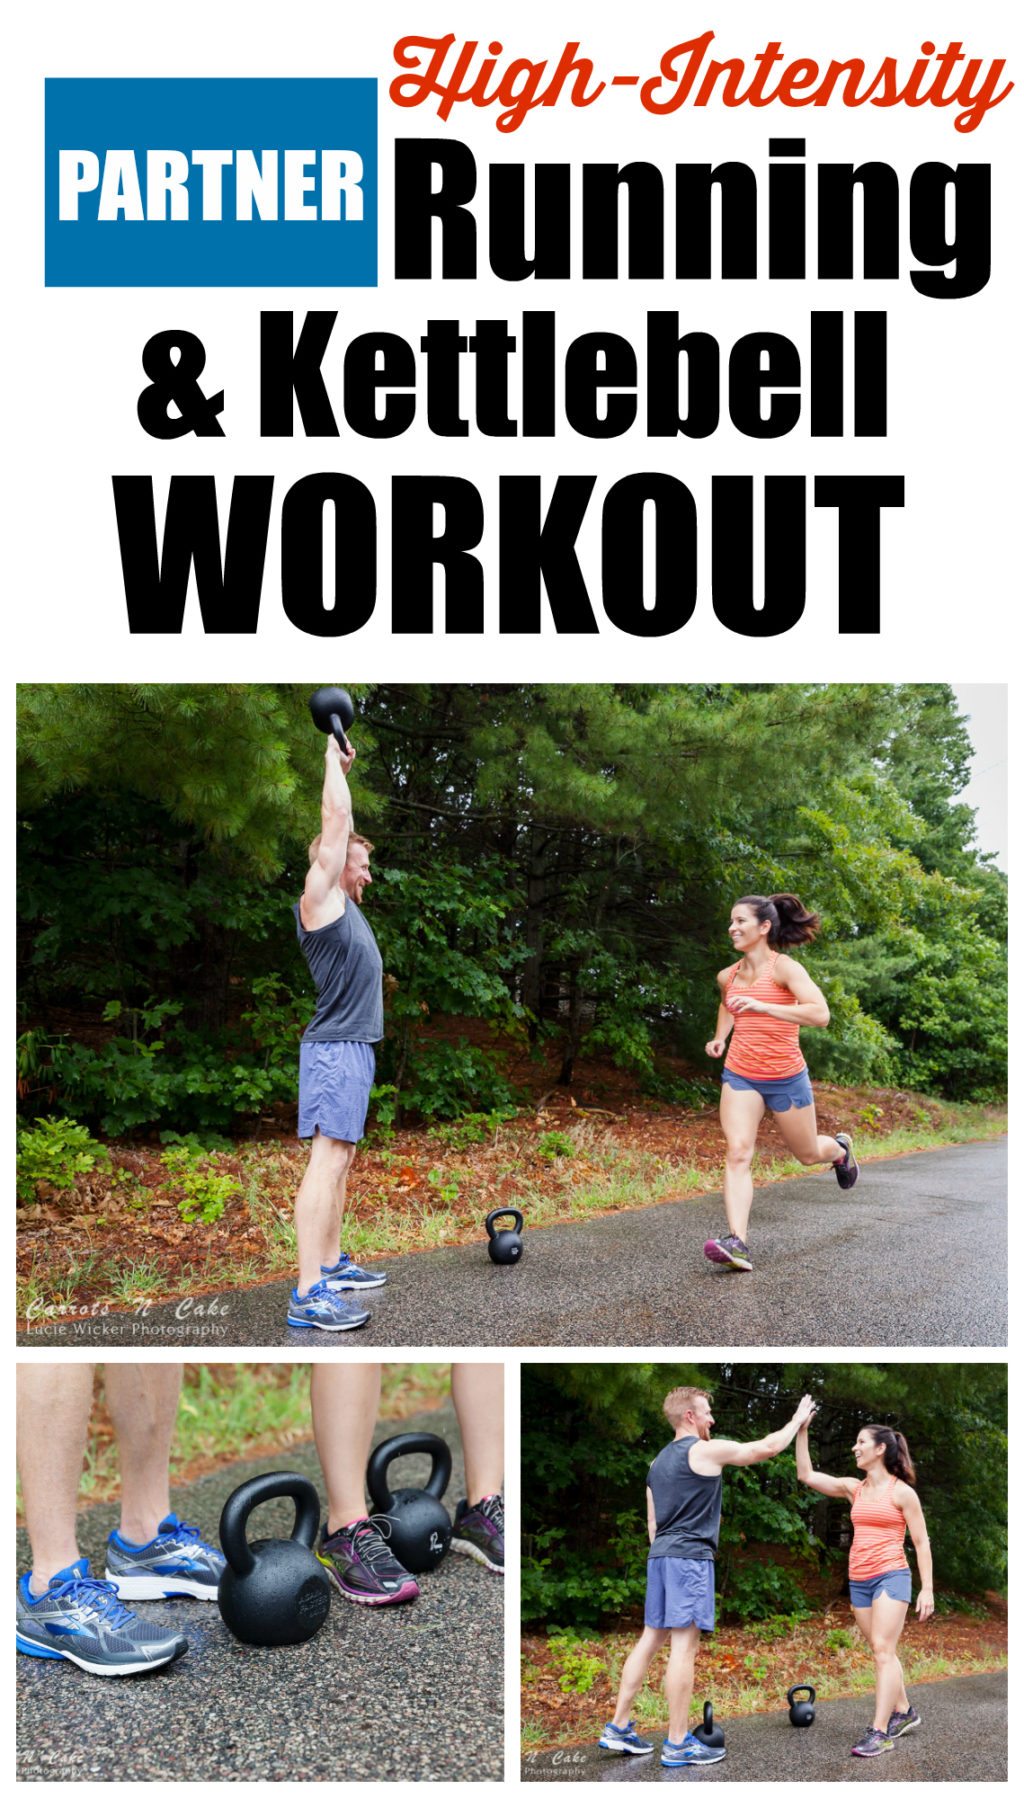 Partner Running & Kettlebell Workout